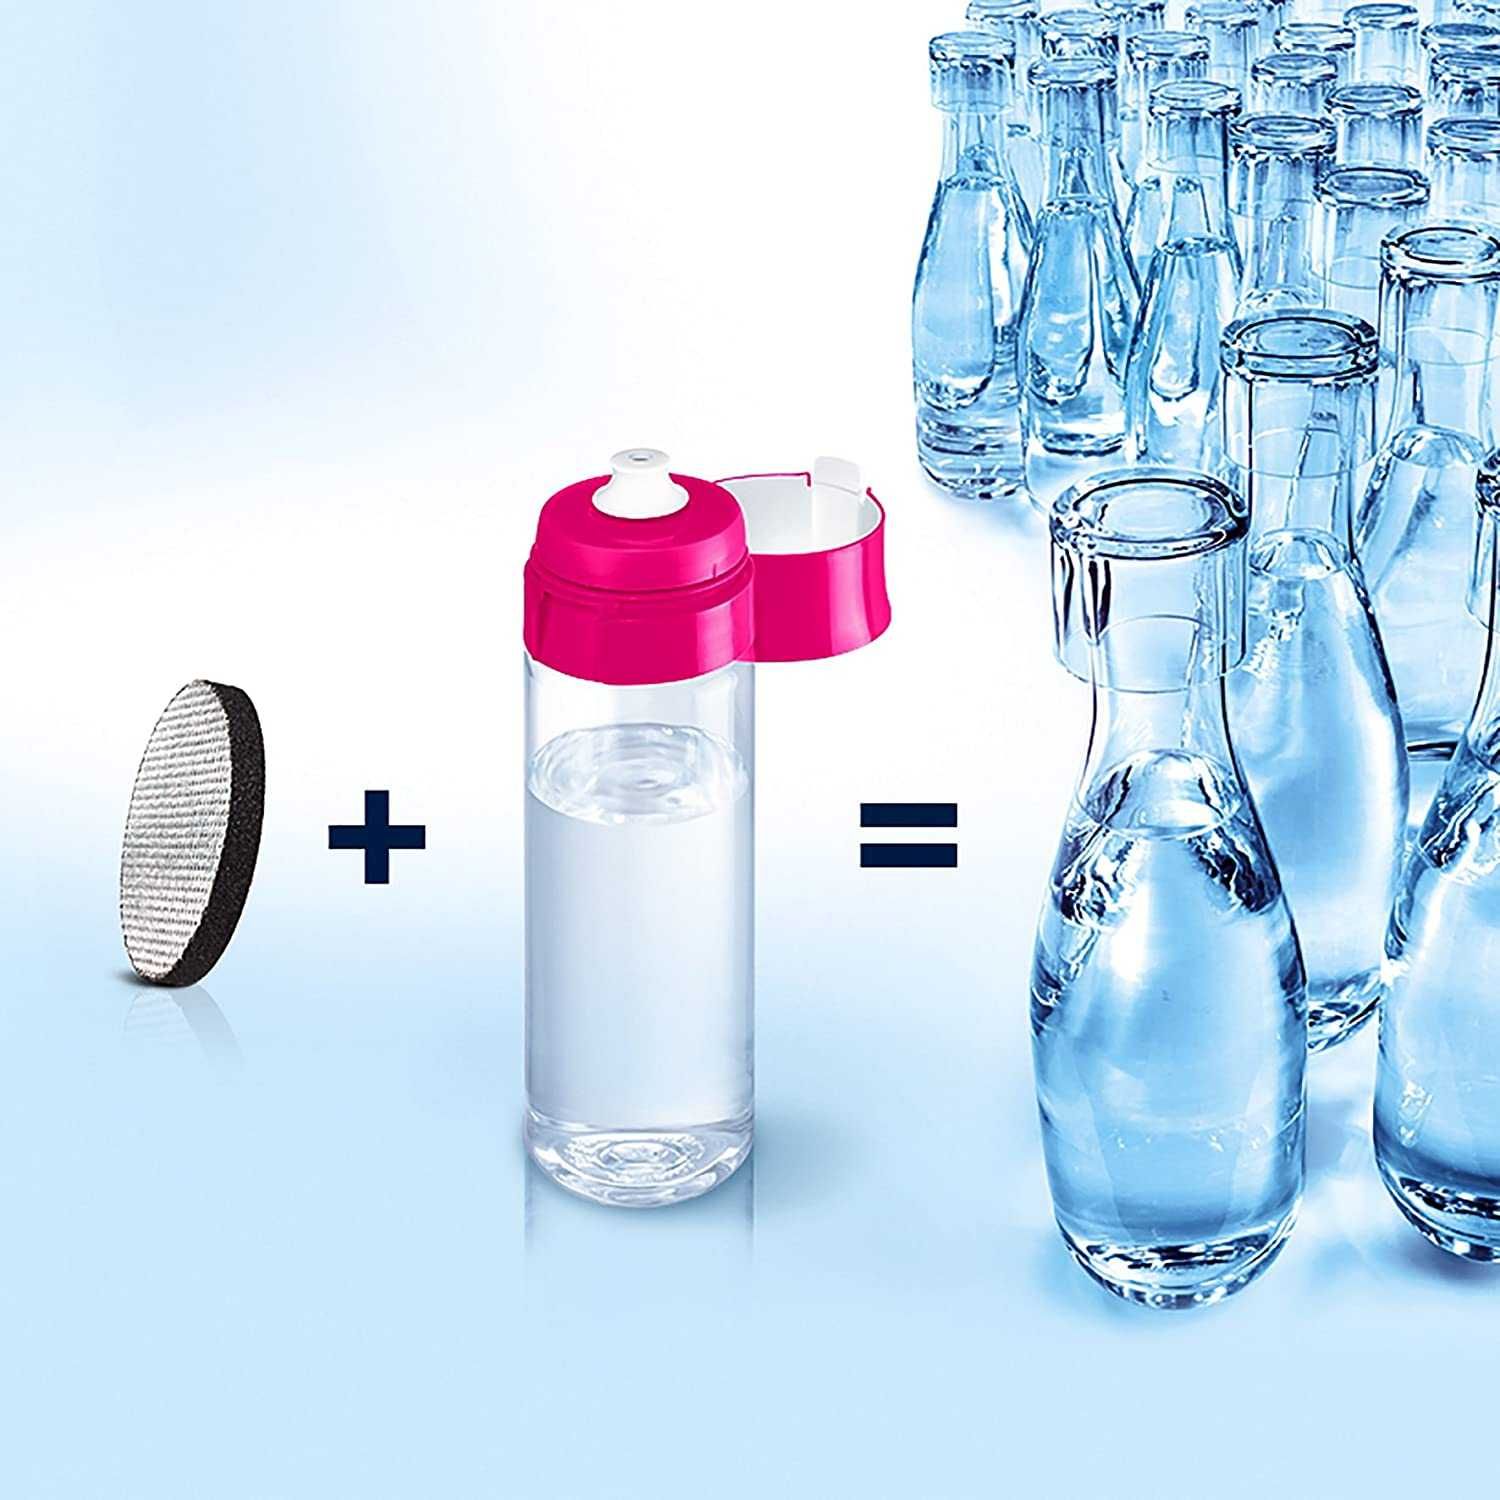 Brita fill&go Vital  бутилка за пречистване на вода с 4 филтъра